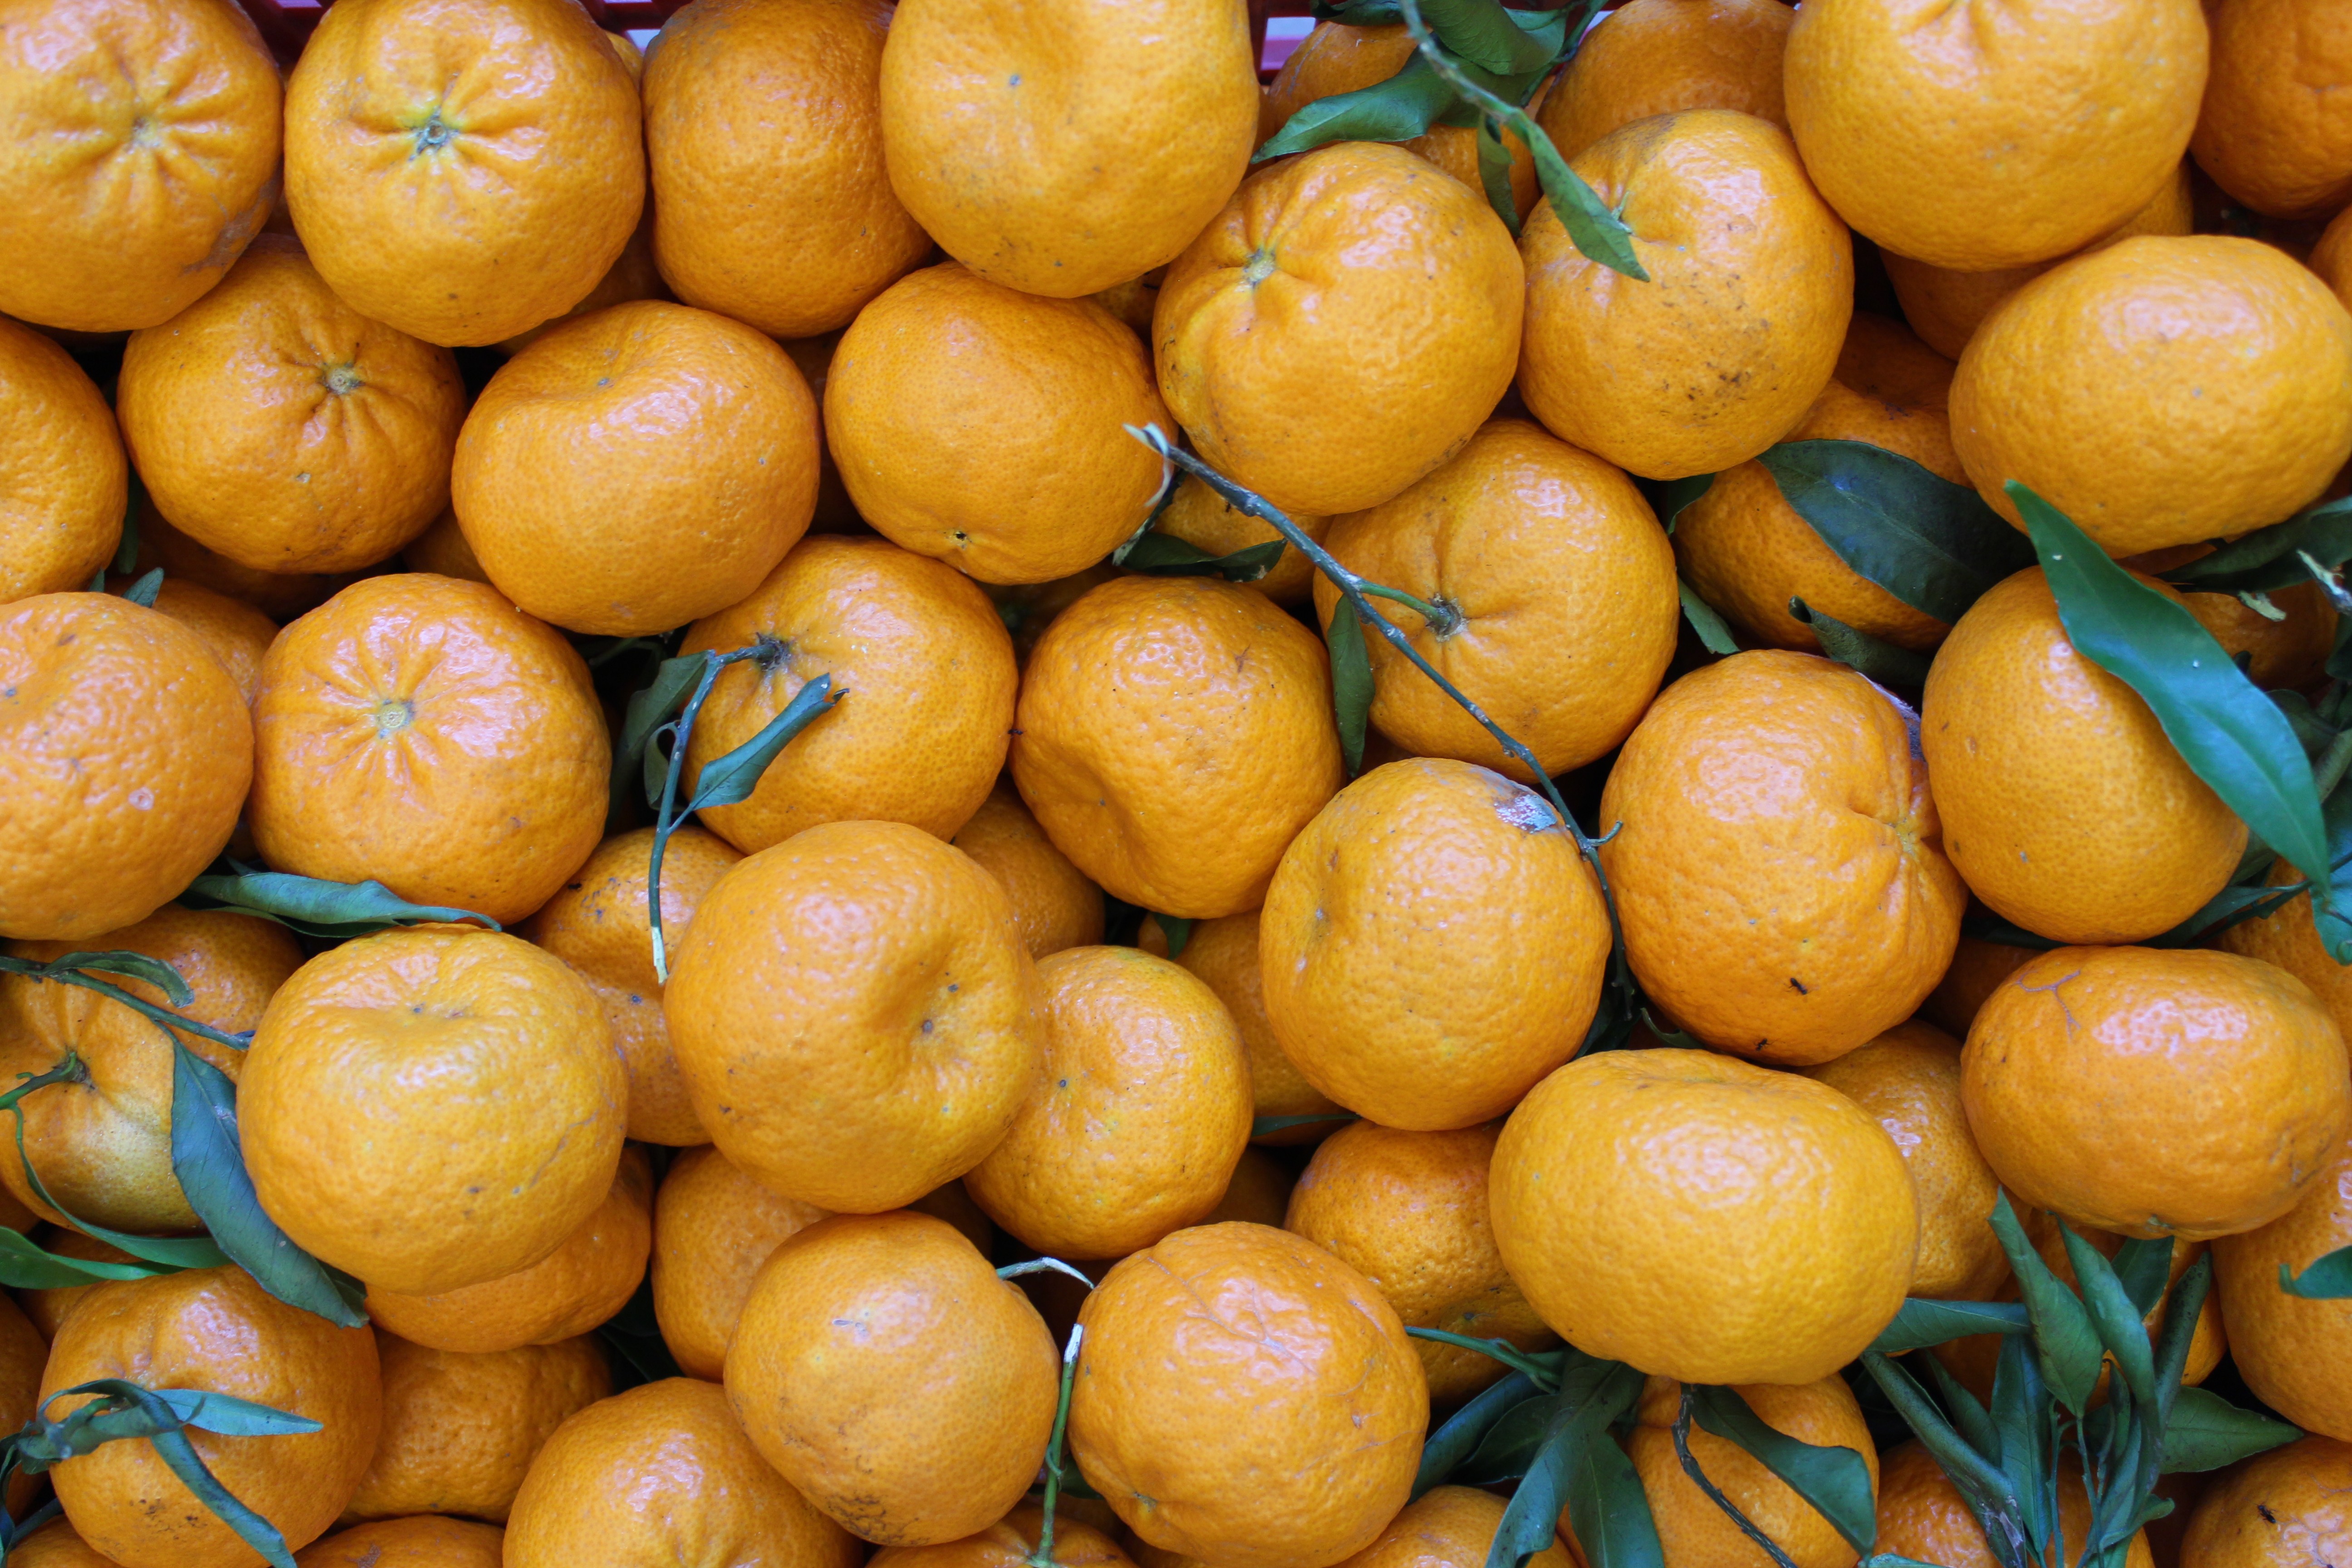 L’oro giallo della Sicilia è in crisi. Per la raccolta 2023/24 si prevedono prezzi delle arance in netto rialzo. Pesano i rincari delle materie prime e il clima estivo di ottobre.